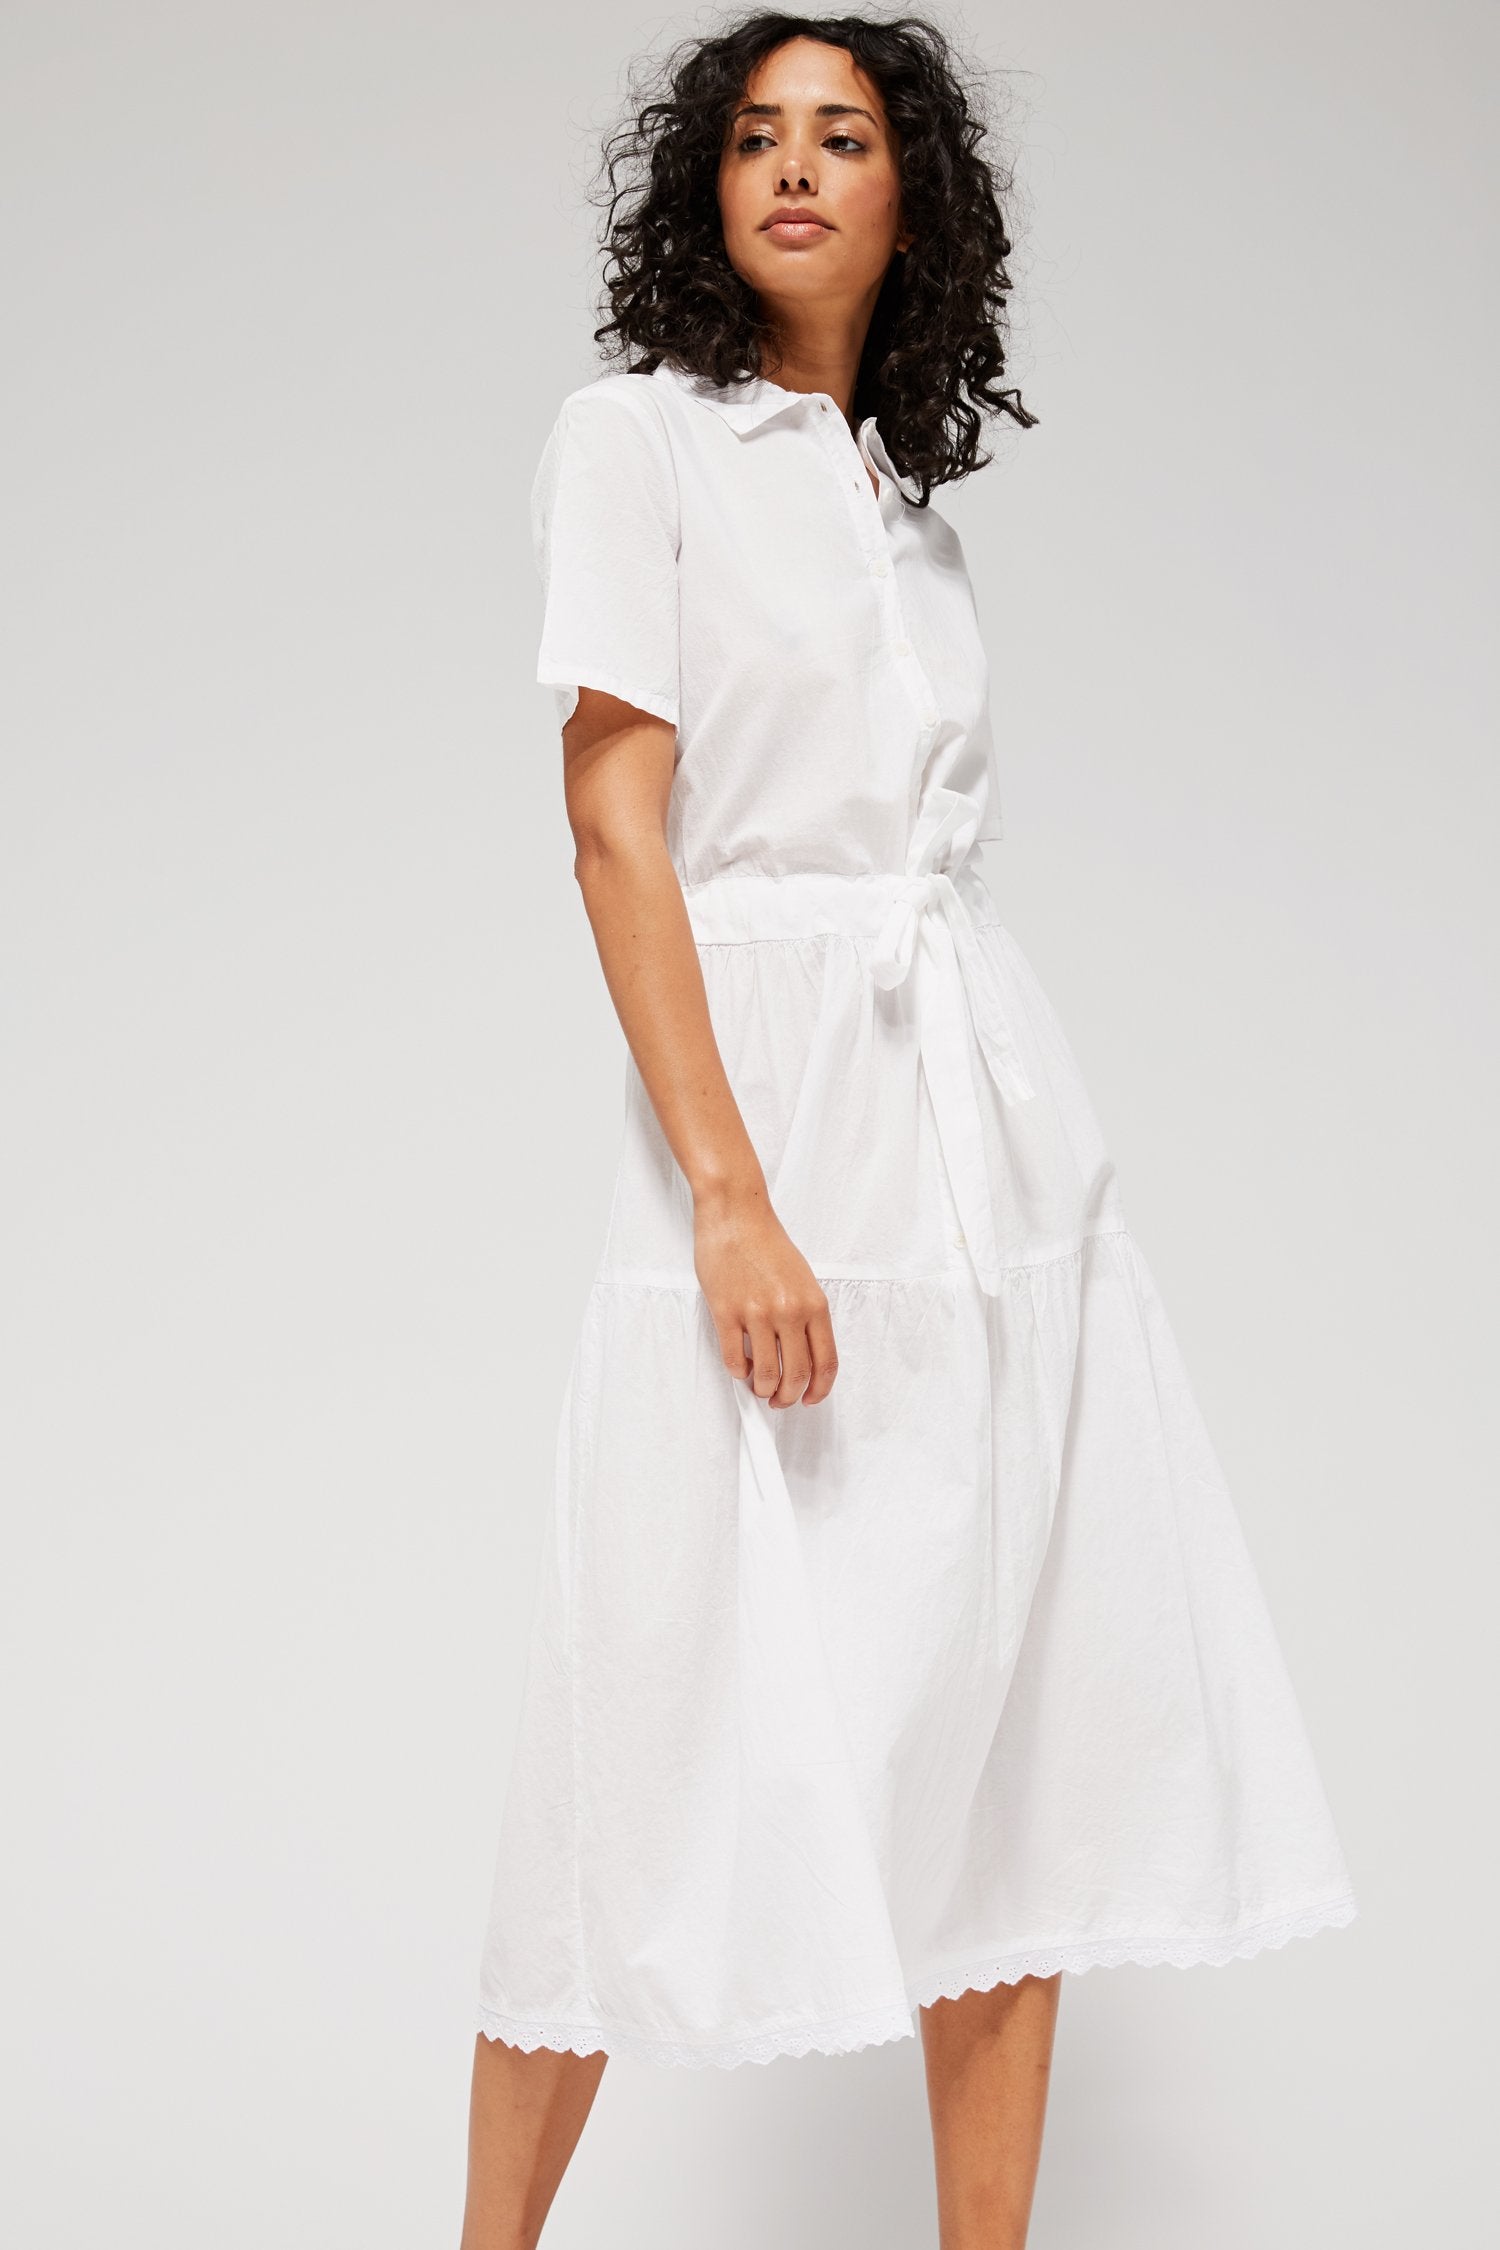 White Shirt Dresses For Women: Collared ...